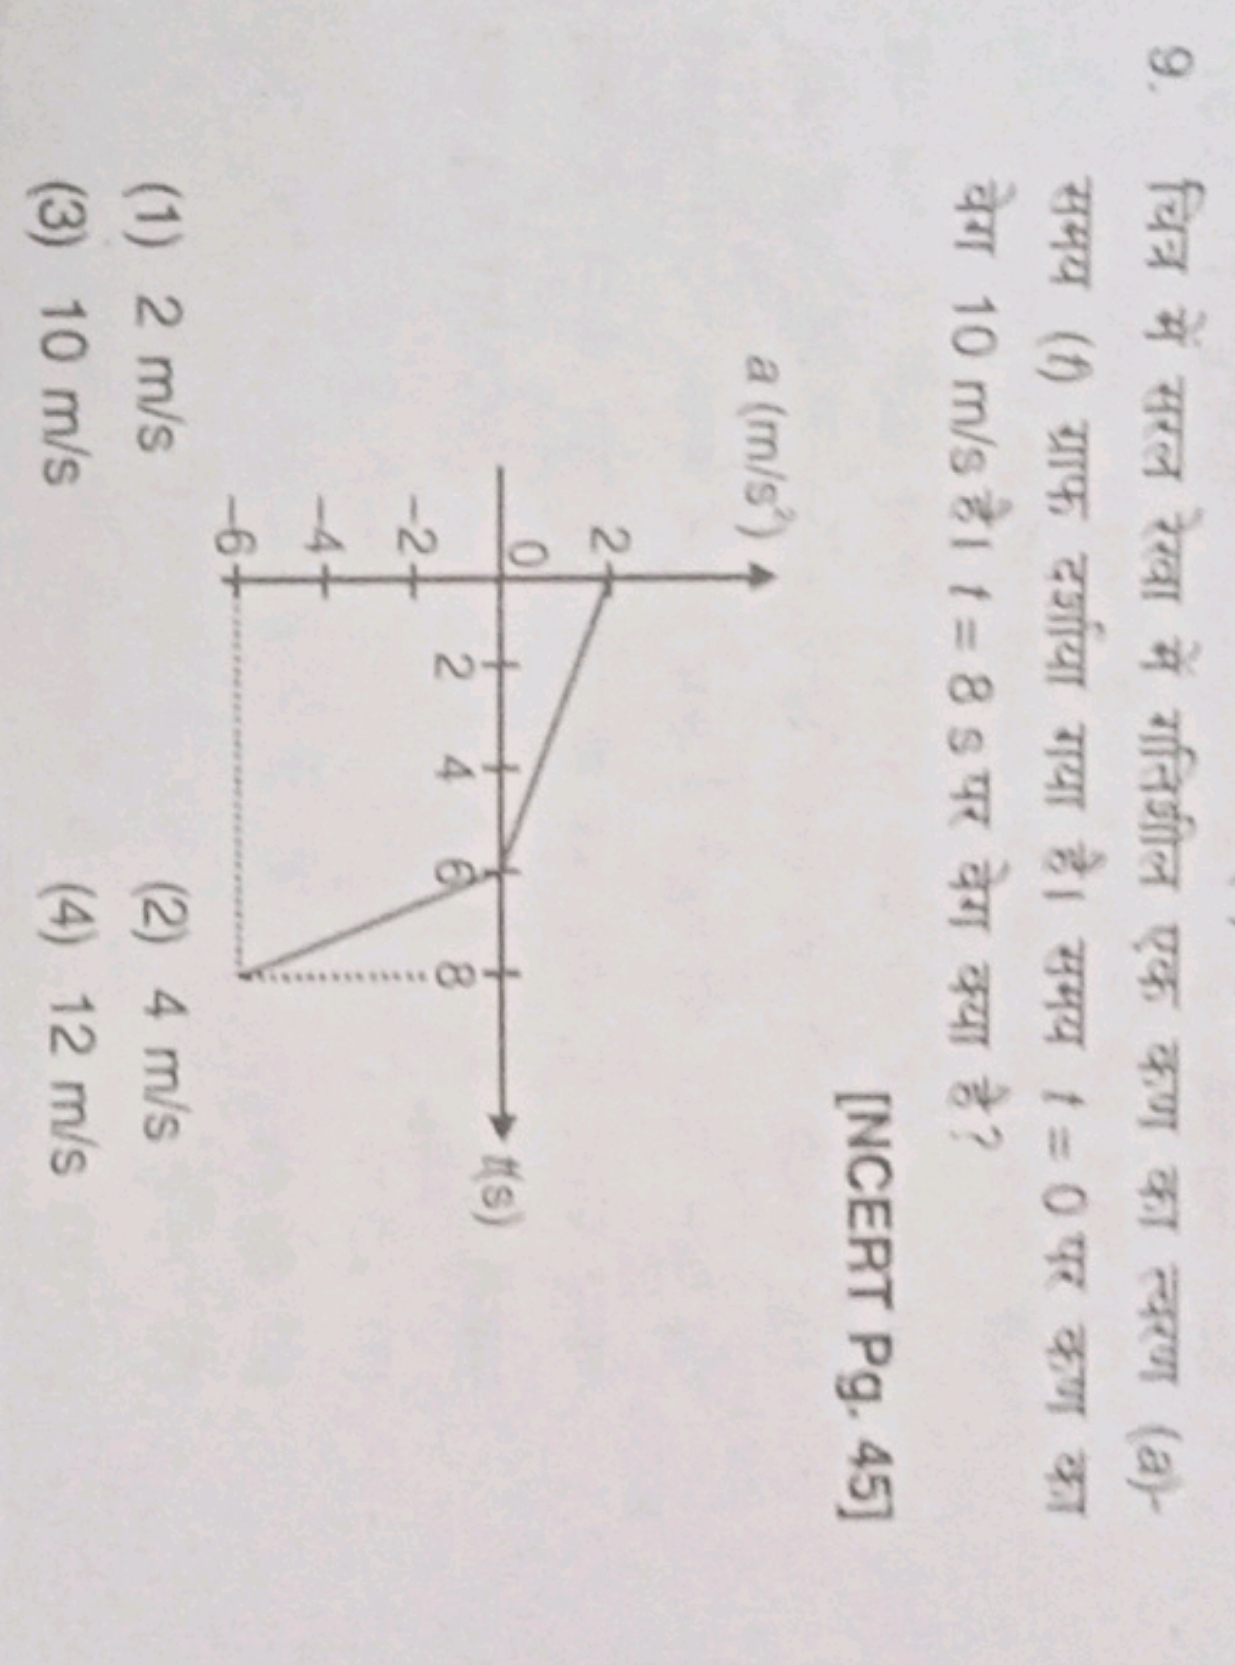 9. चित्र में सरल रेखा में गतिझील एक कण का त्वरण (a)समय (f) ग्राफ दर्शा